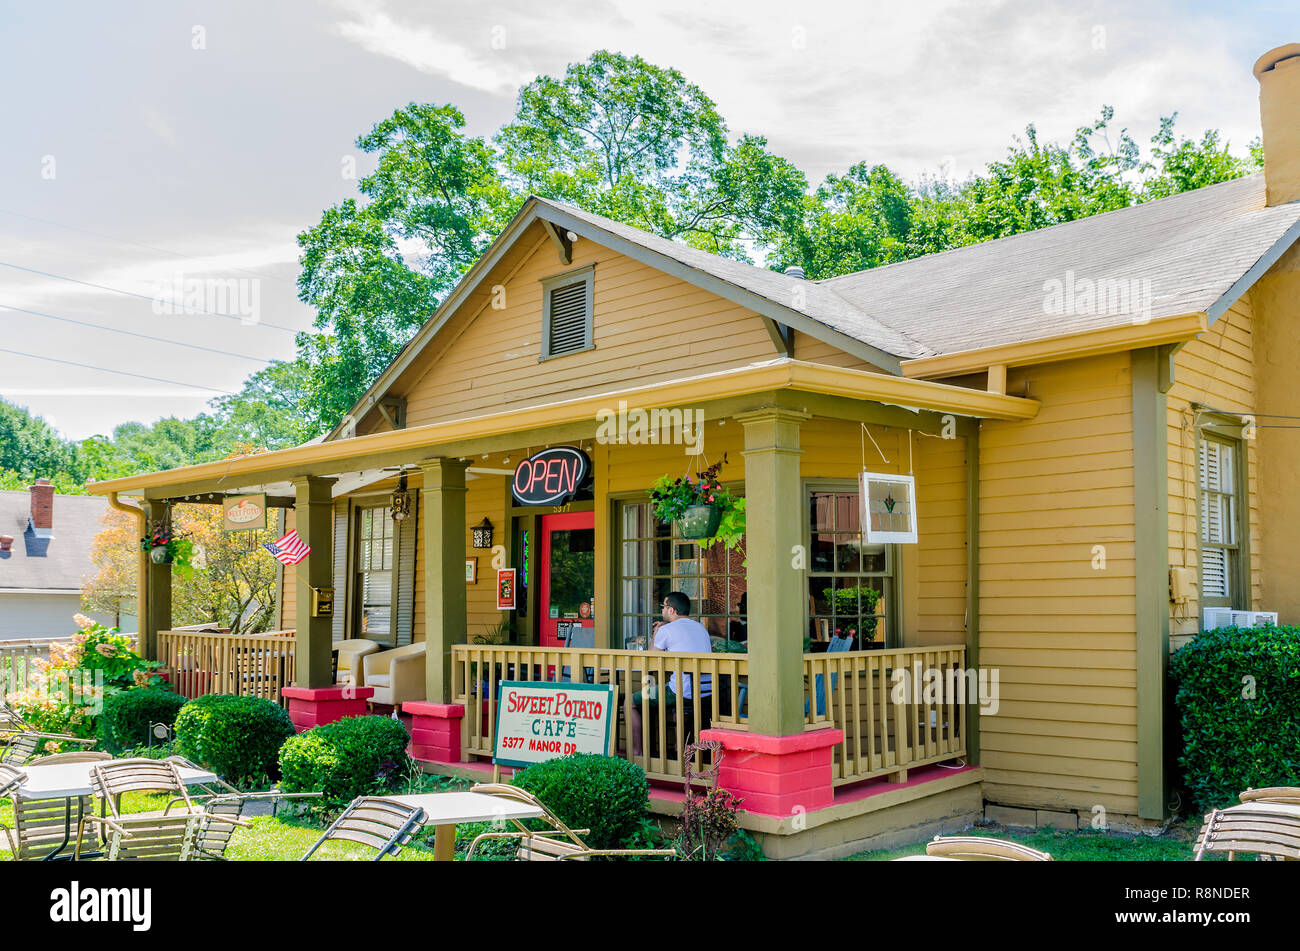 Gäste können drinnen oder draußen auf der Süßkartoffel Cafe in Stone Mountain, Georgia essen. Das familiengeführte Restaurant folgt dem Farm-to-table-Konzept. Stockfoto